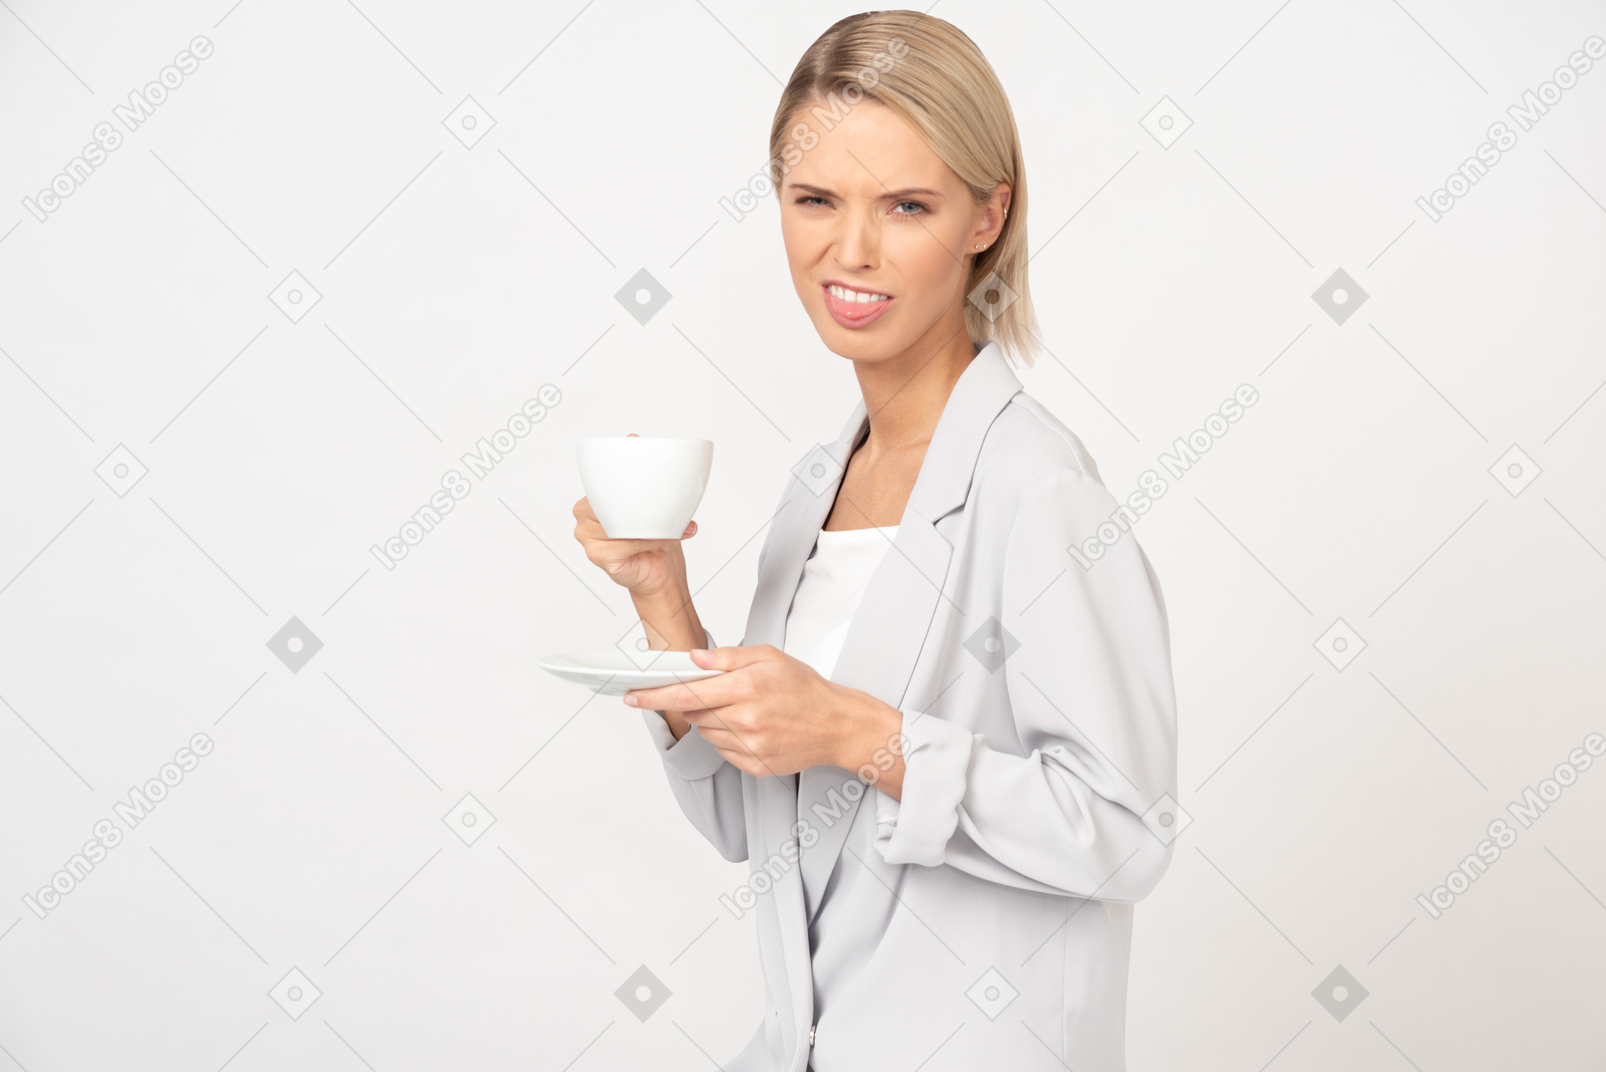 Enttäuscht von ihrem kaffee